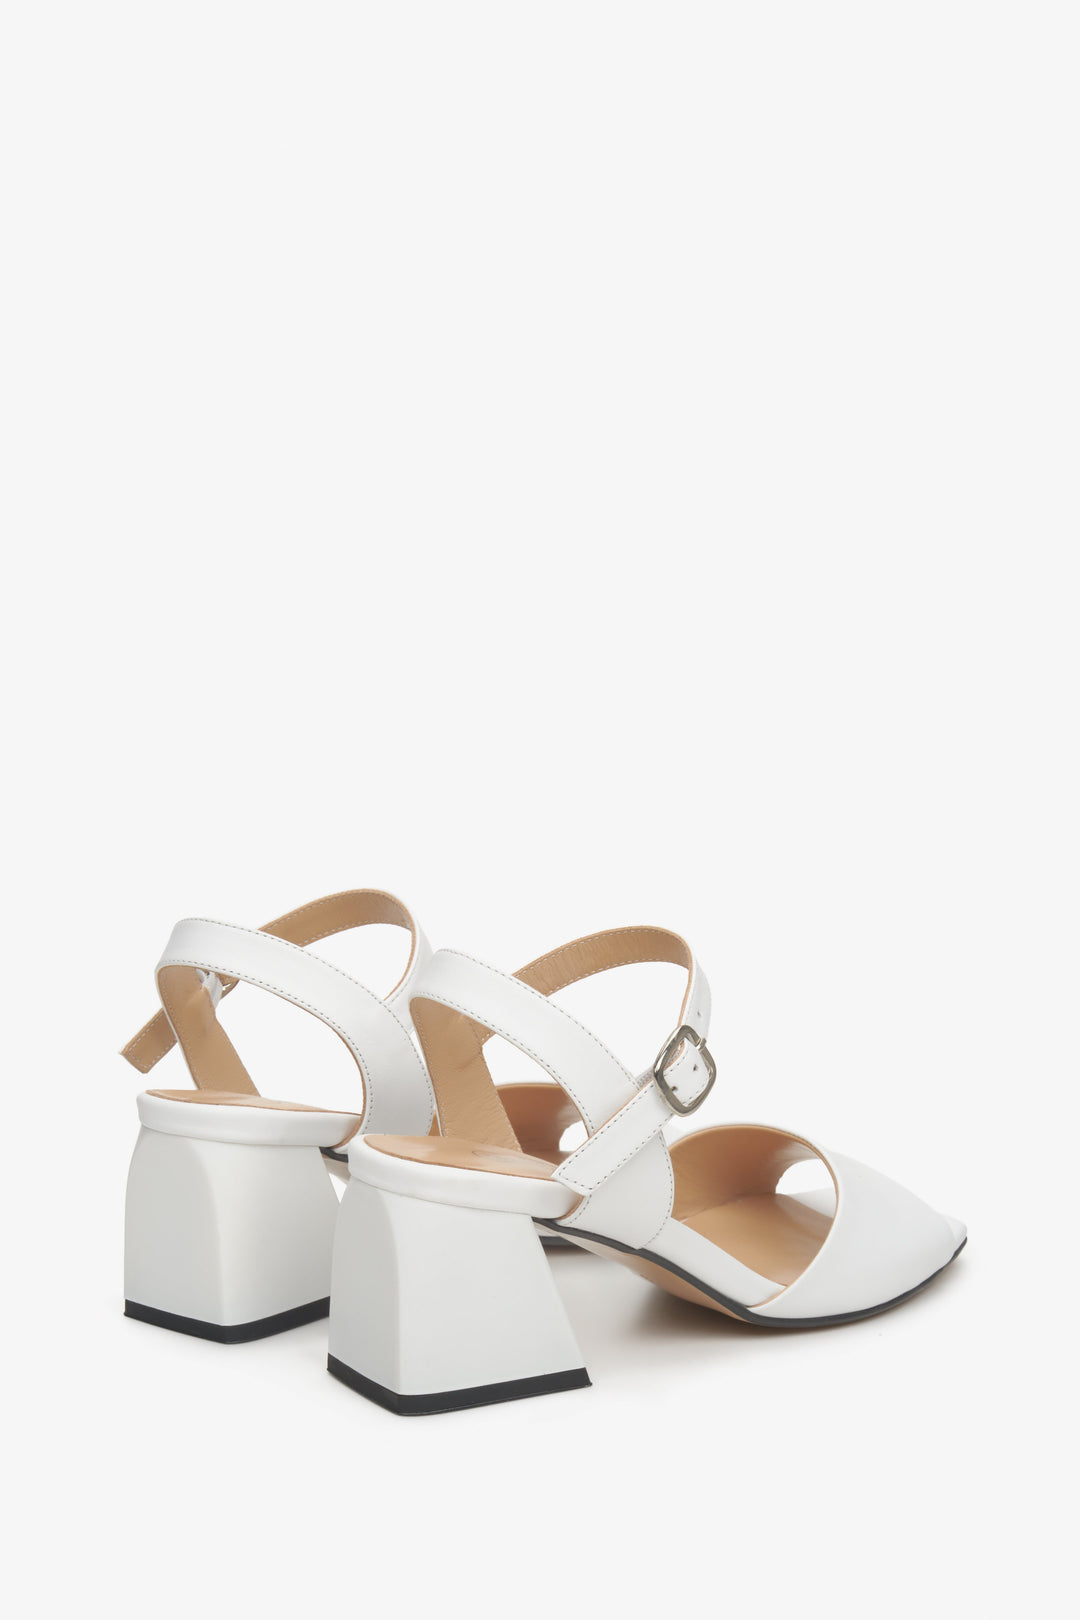 Białe, skórzane sandały damskie Estro - zbliżenie na obcas na słupku i boczną część butów.